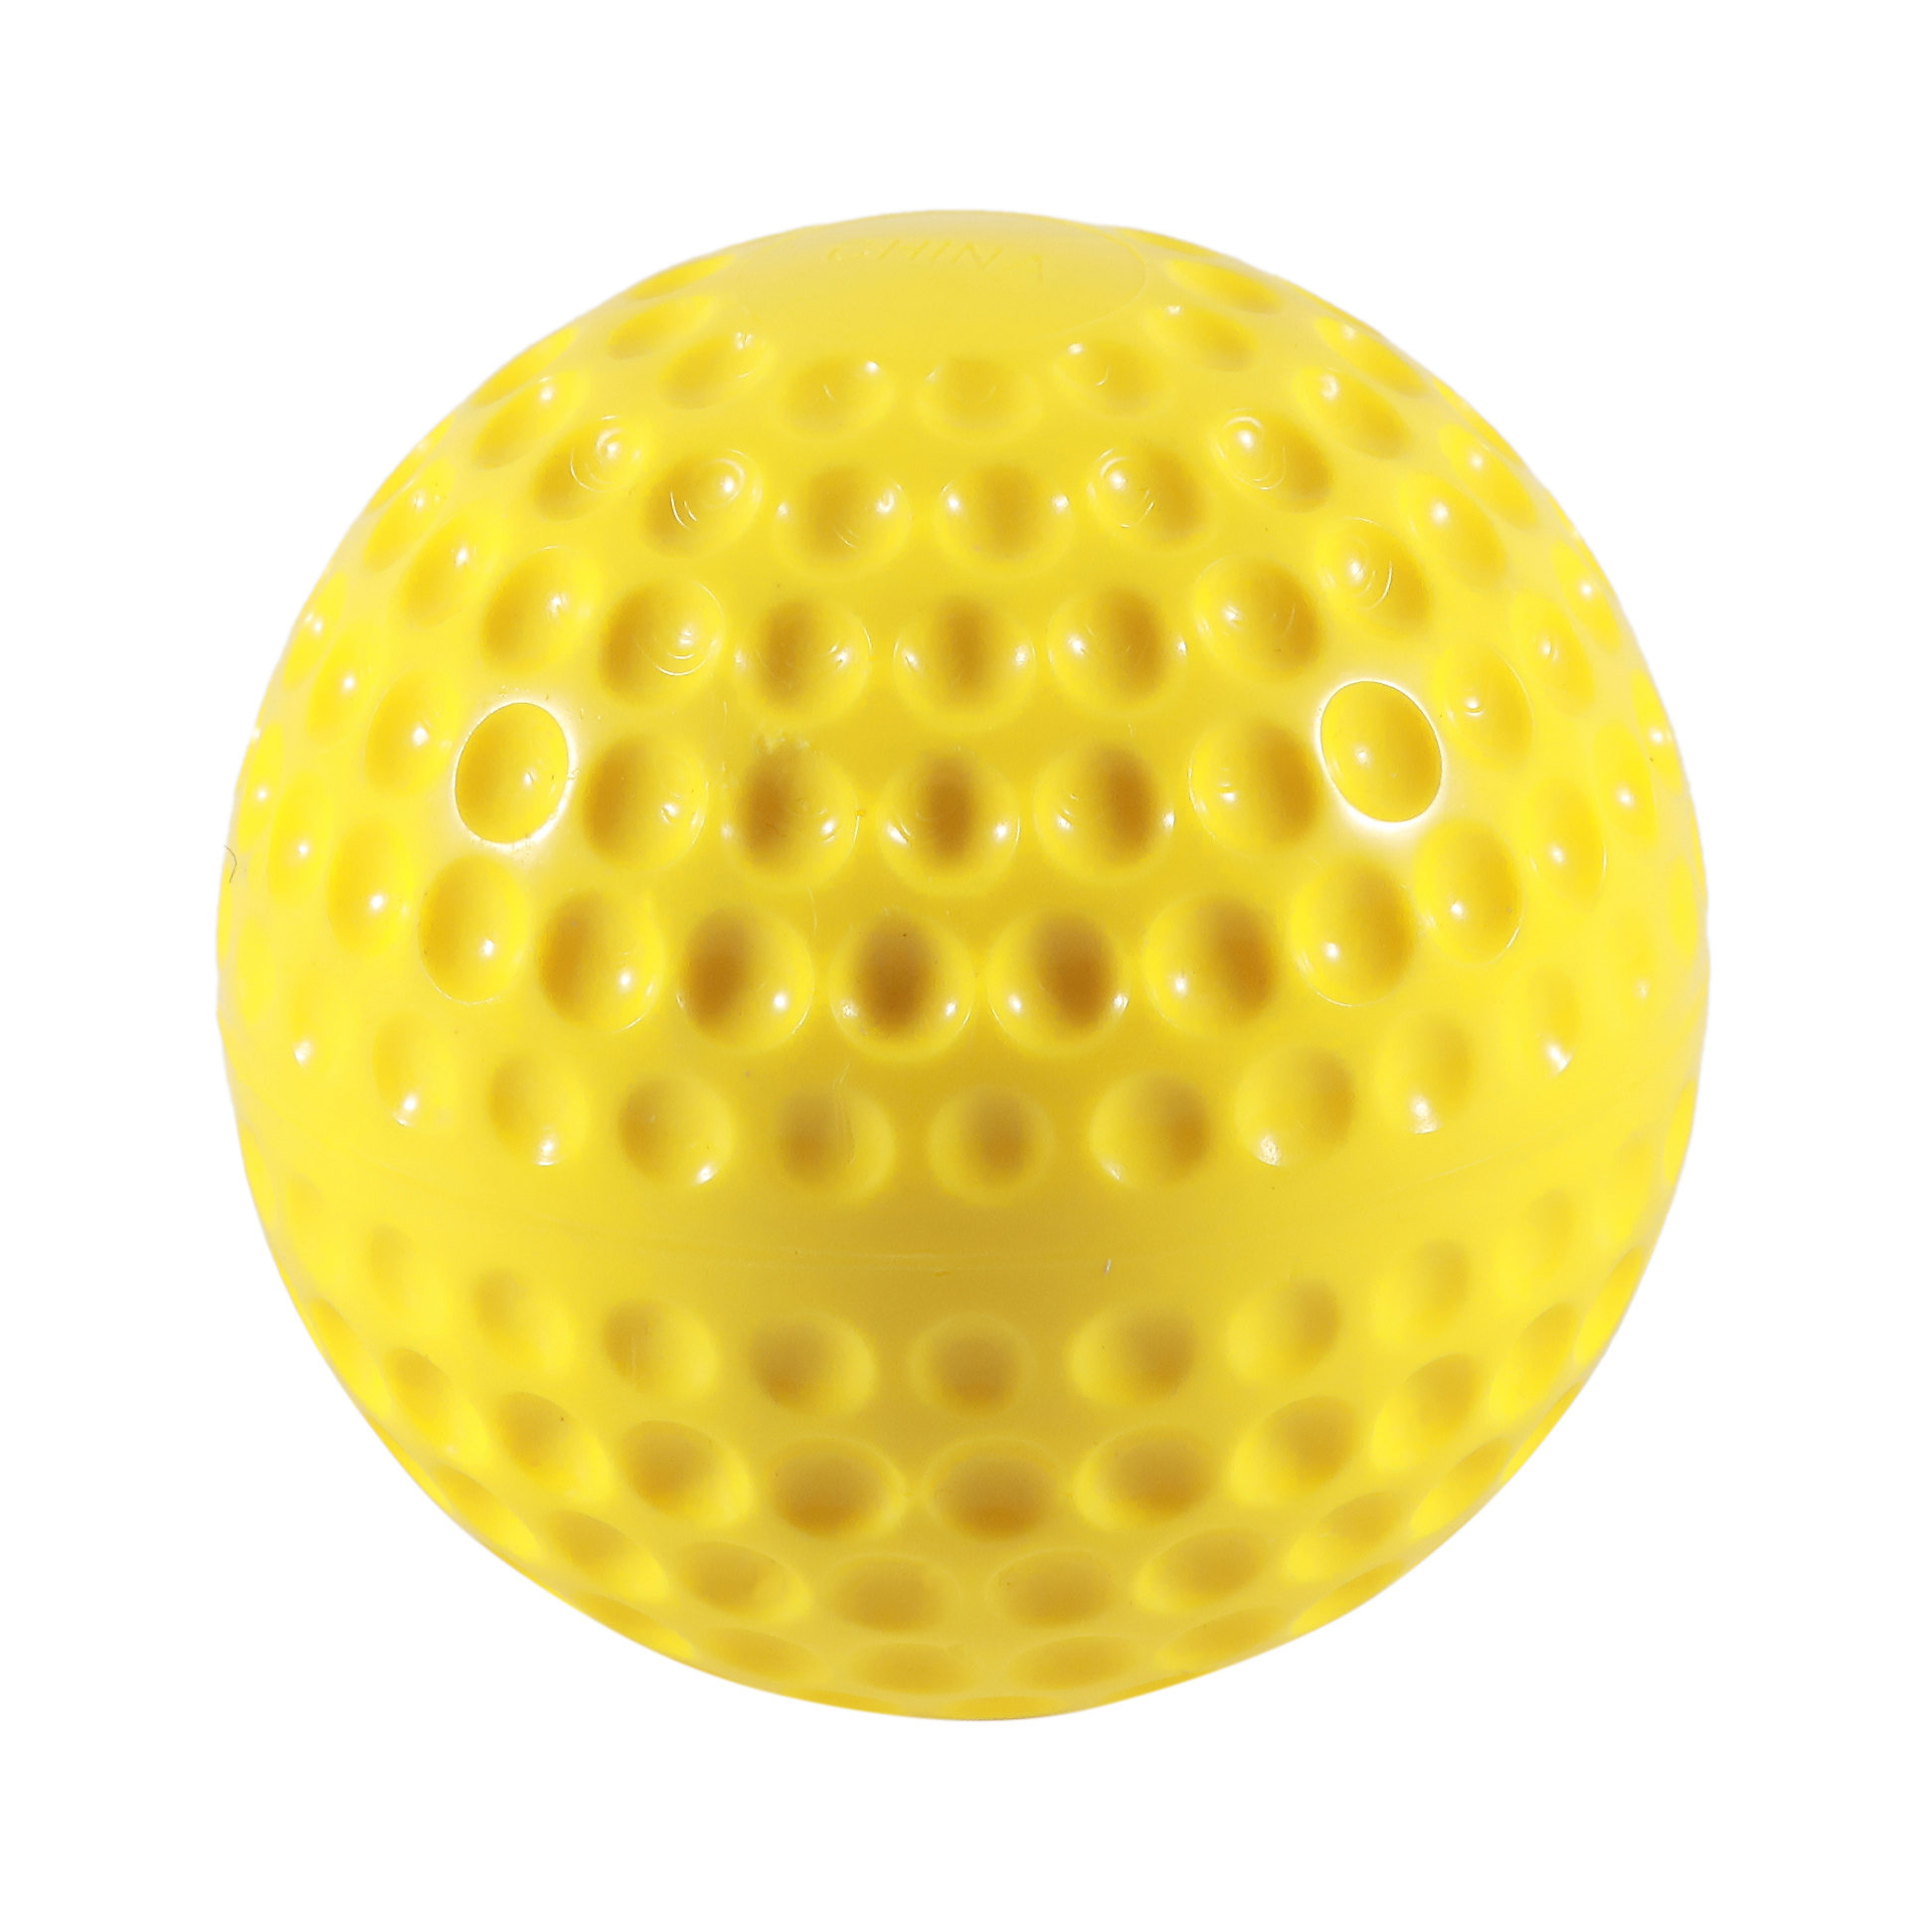  11 بوصة مخصص Whosale Fastpitch Optic Yellow Softball